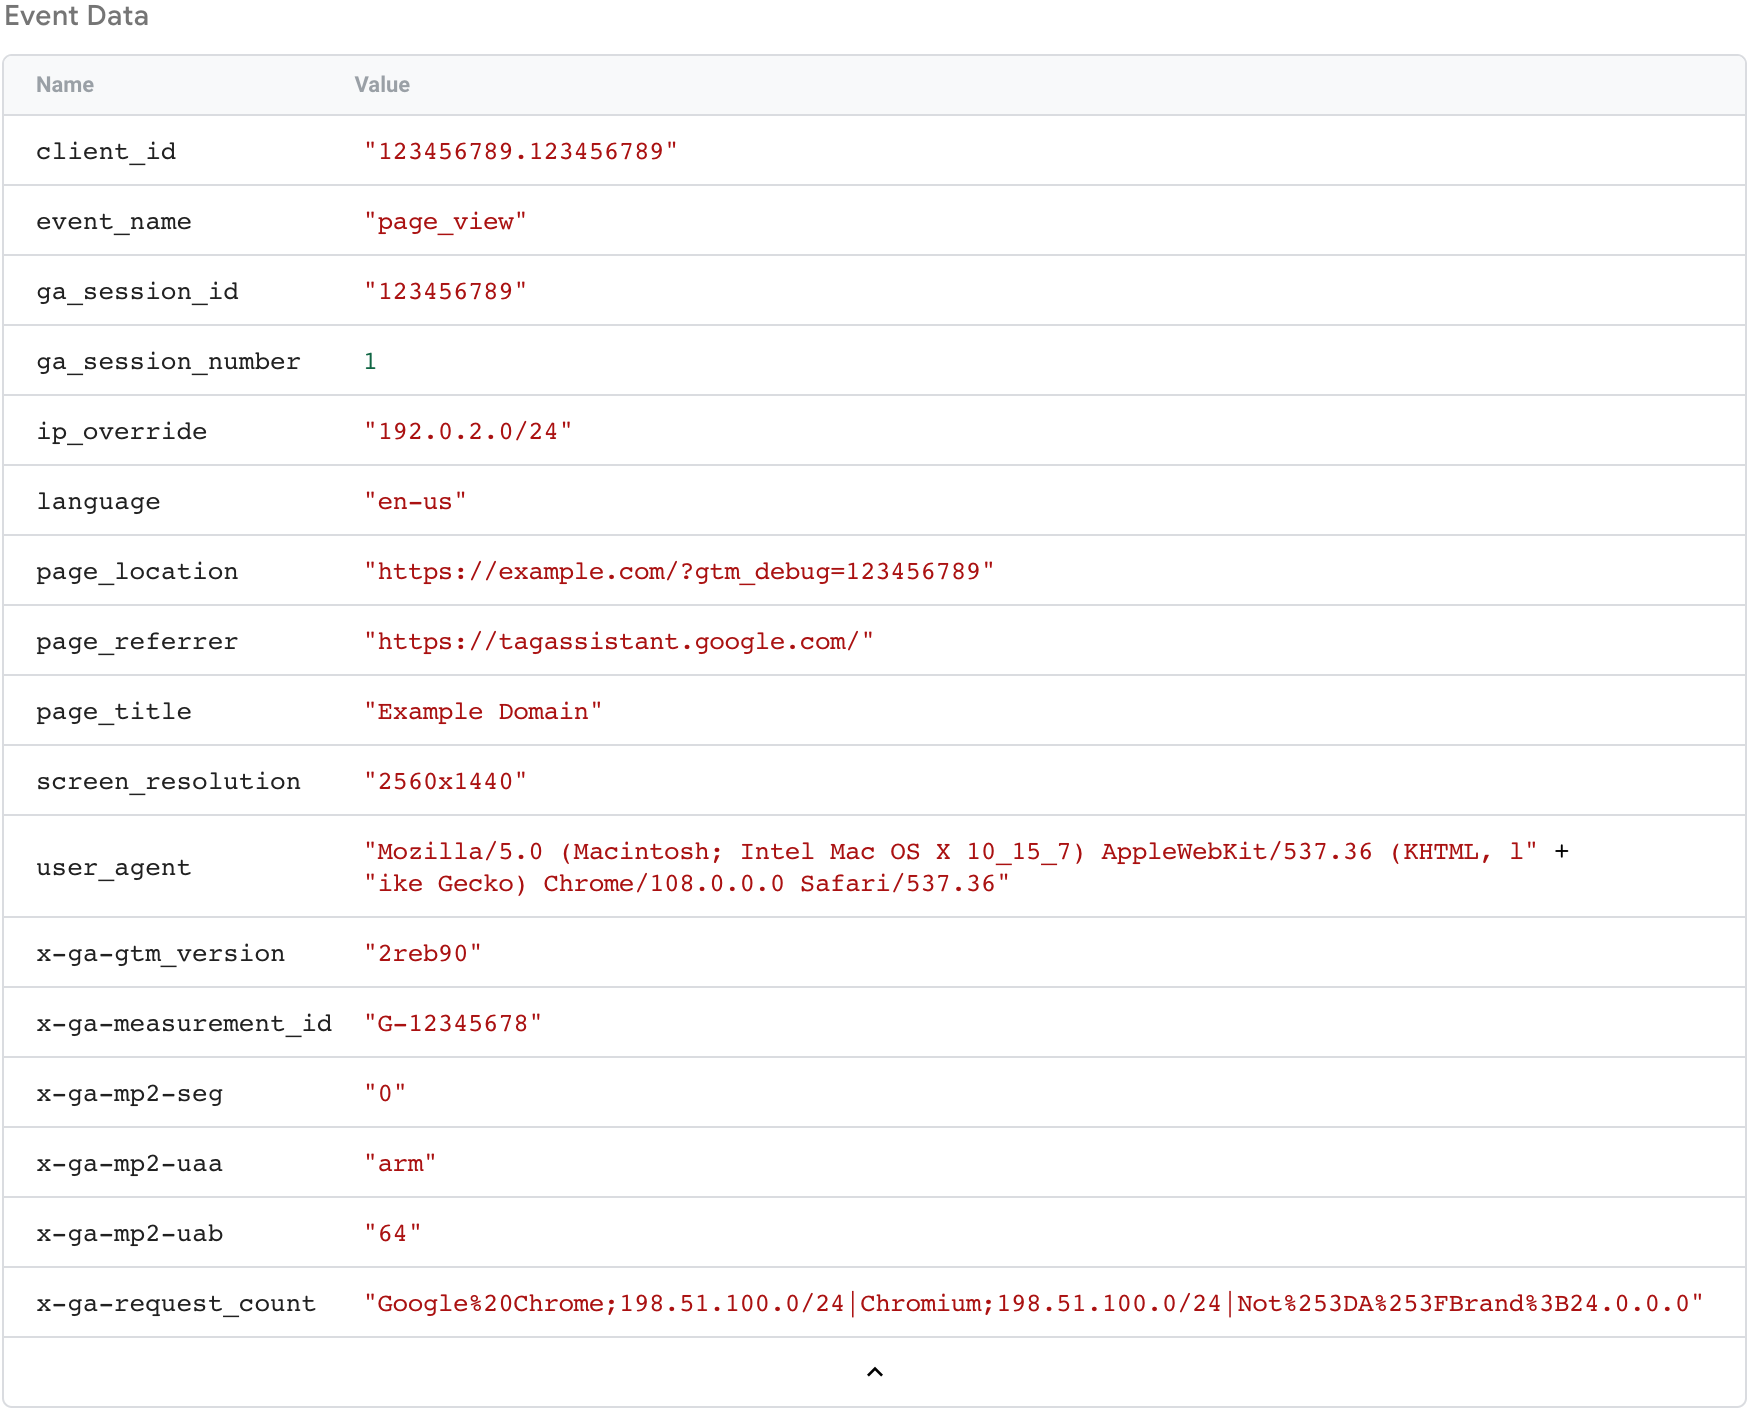 Captura de tela de todos os parâmetros em um objeto de dados de eventos com base na solicitação recebida.